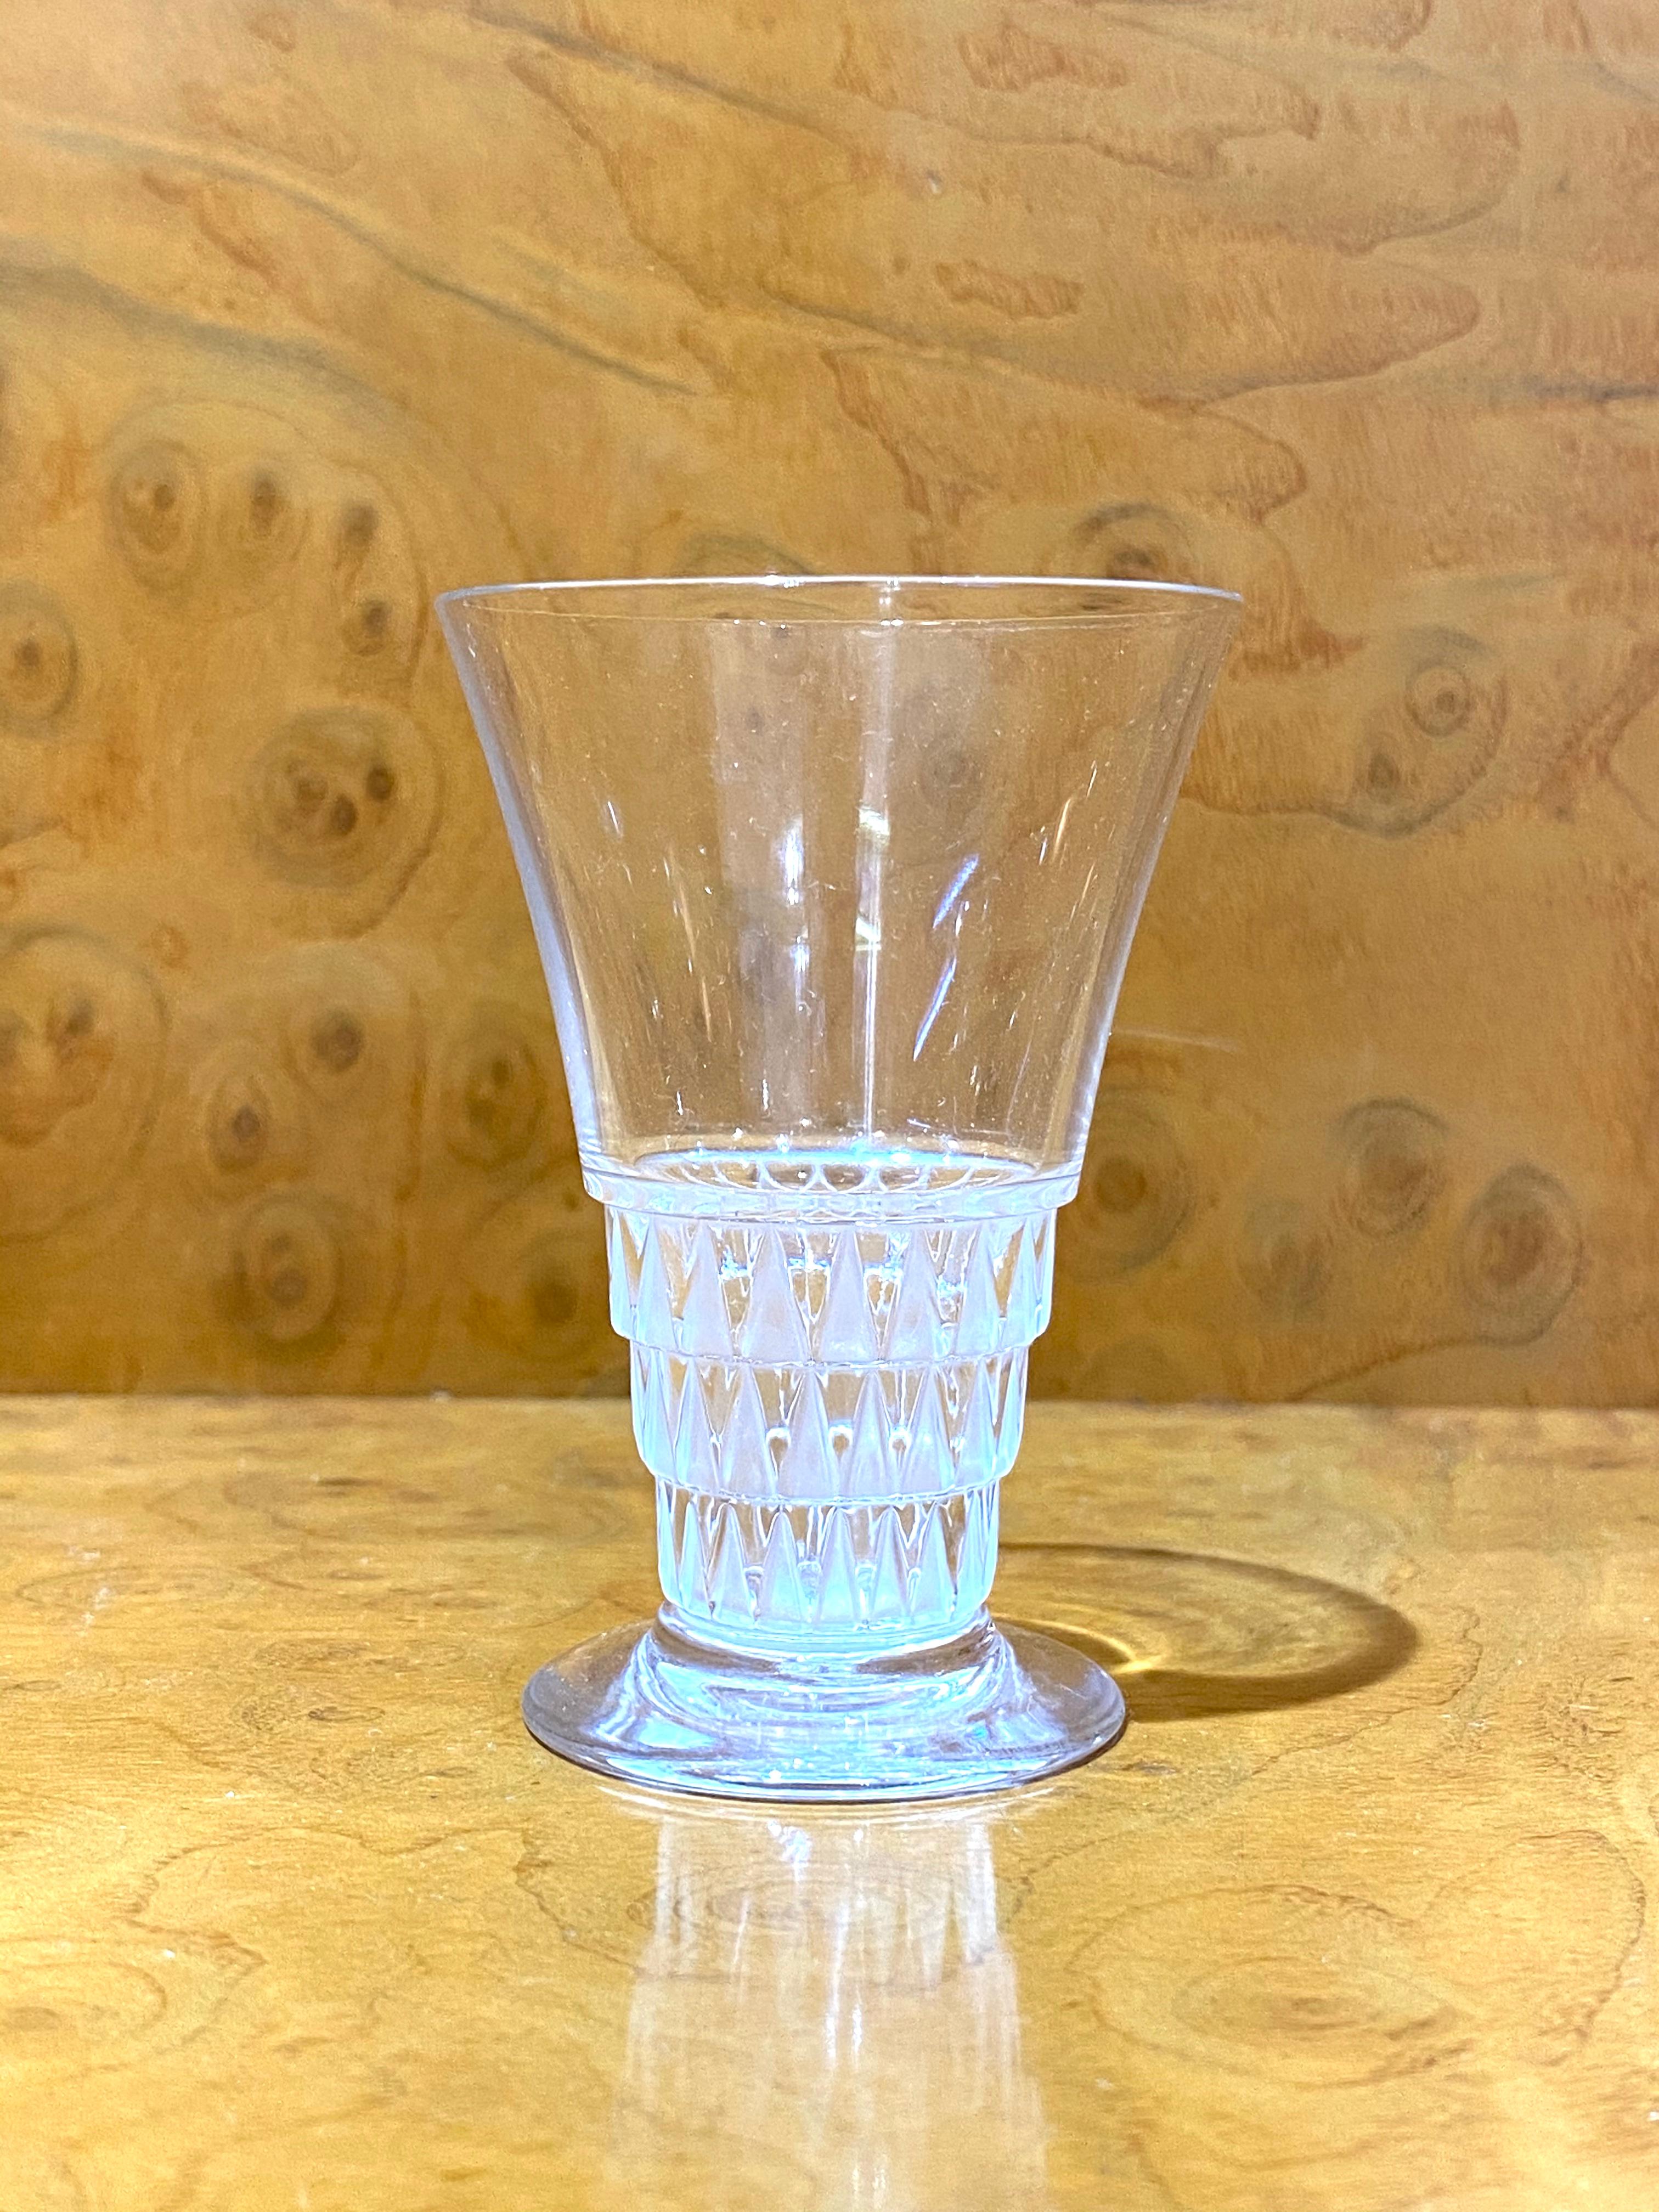 Mid-20th Century 1930 René Lalique Original Bourgueil Liquor Set of 7 Pieces 6 Glasses 1 Decanter